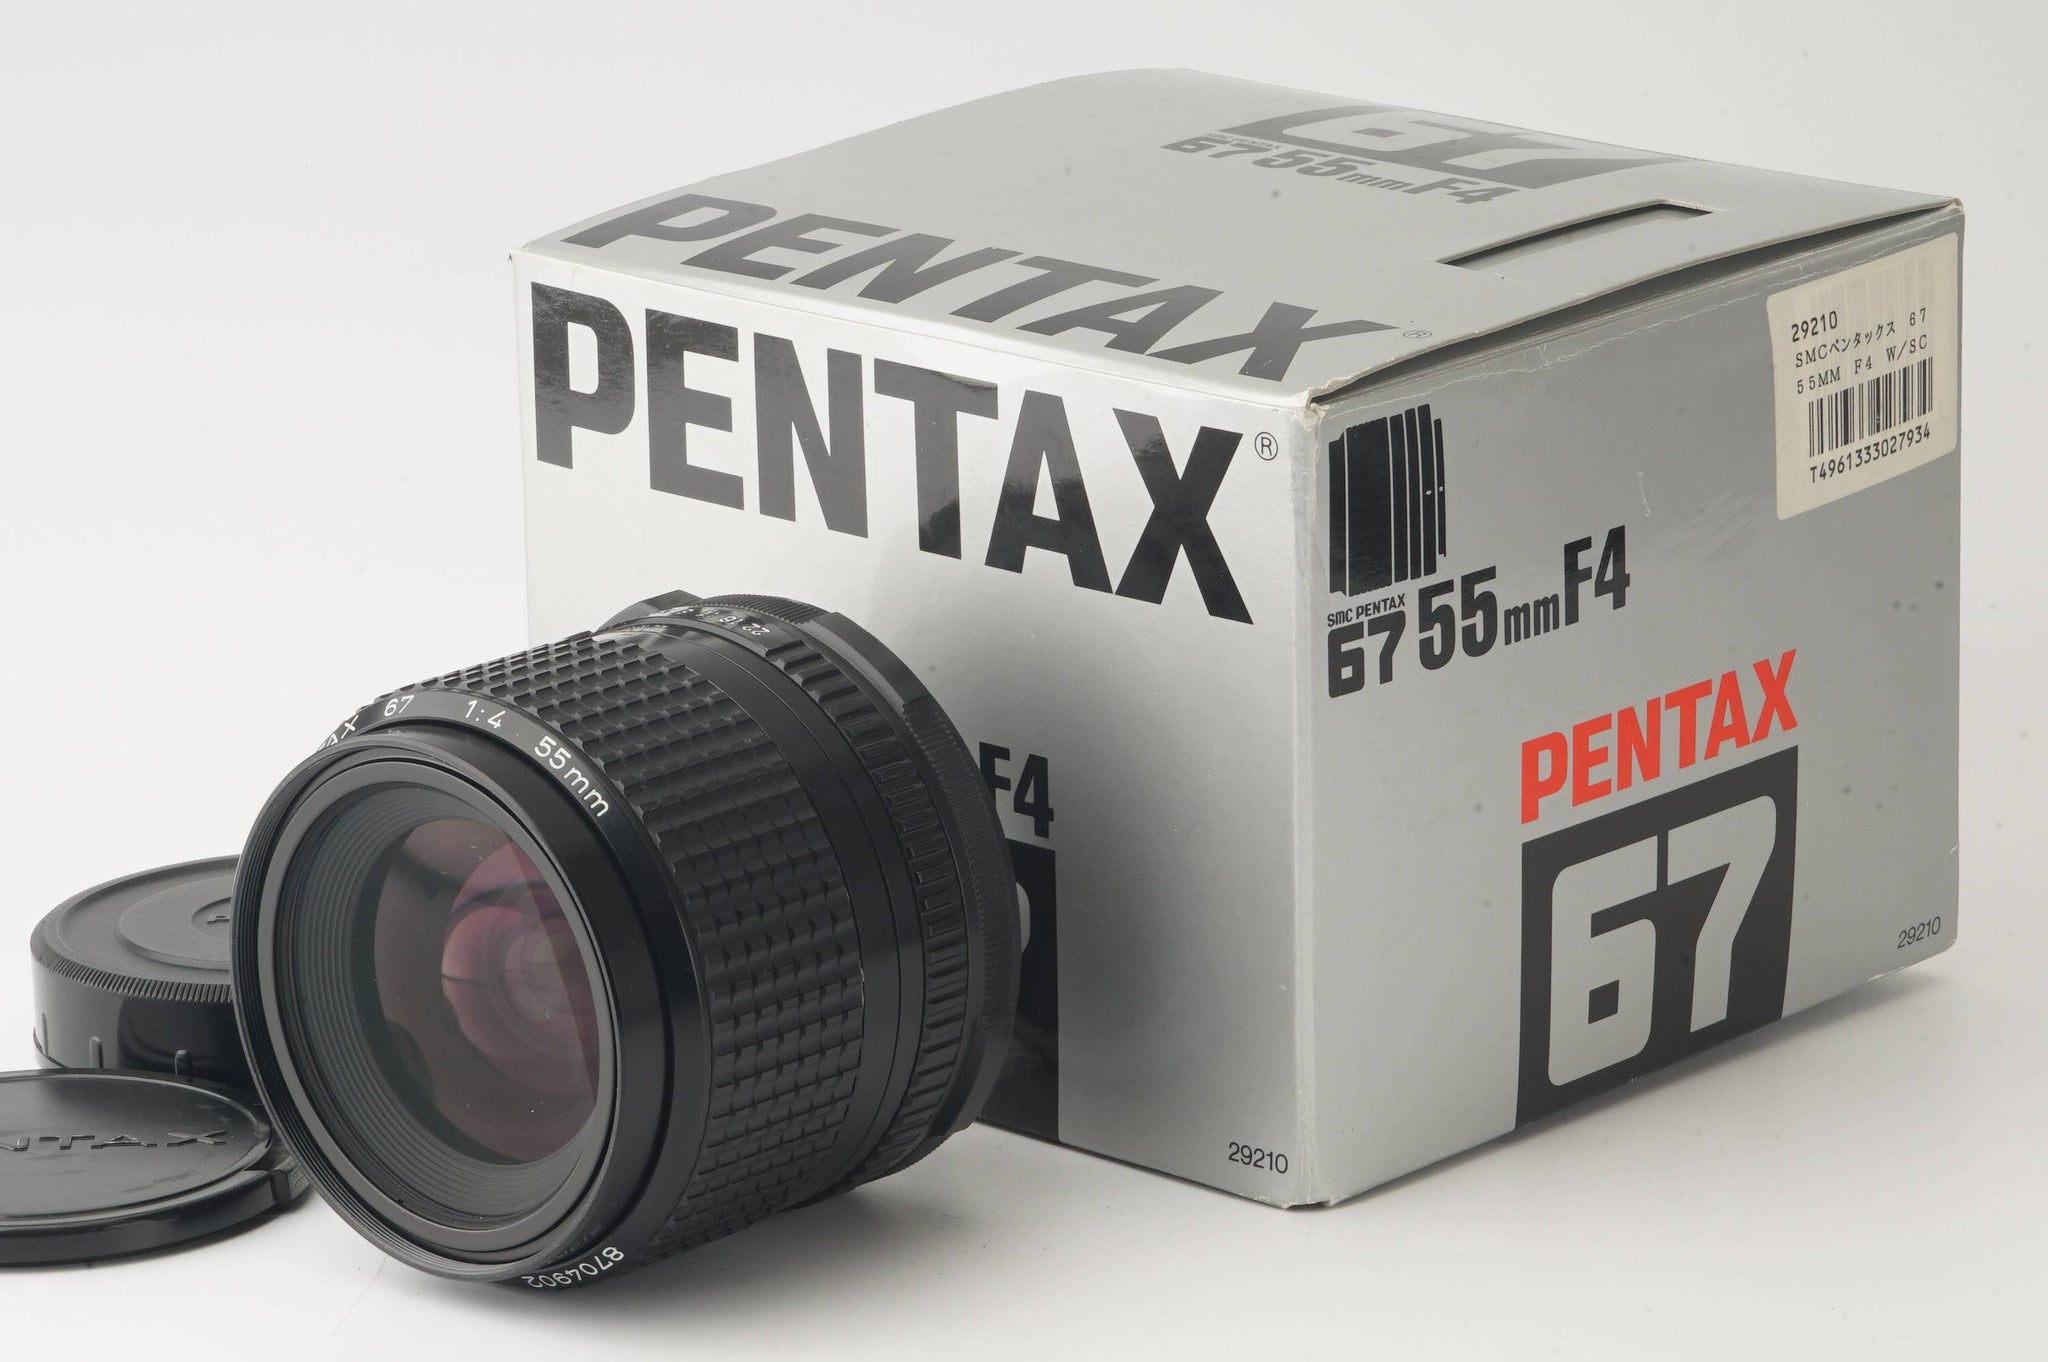 ★OH済み★ペンタックス PENTAX 67 55mm f/4-無し